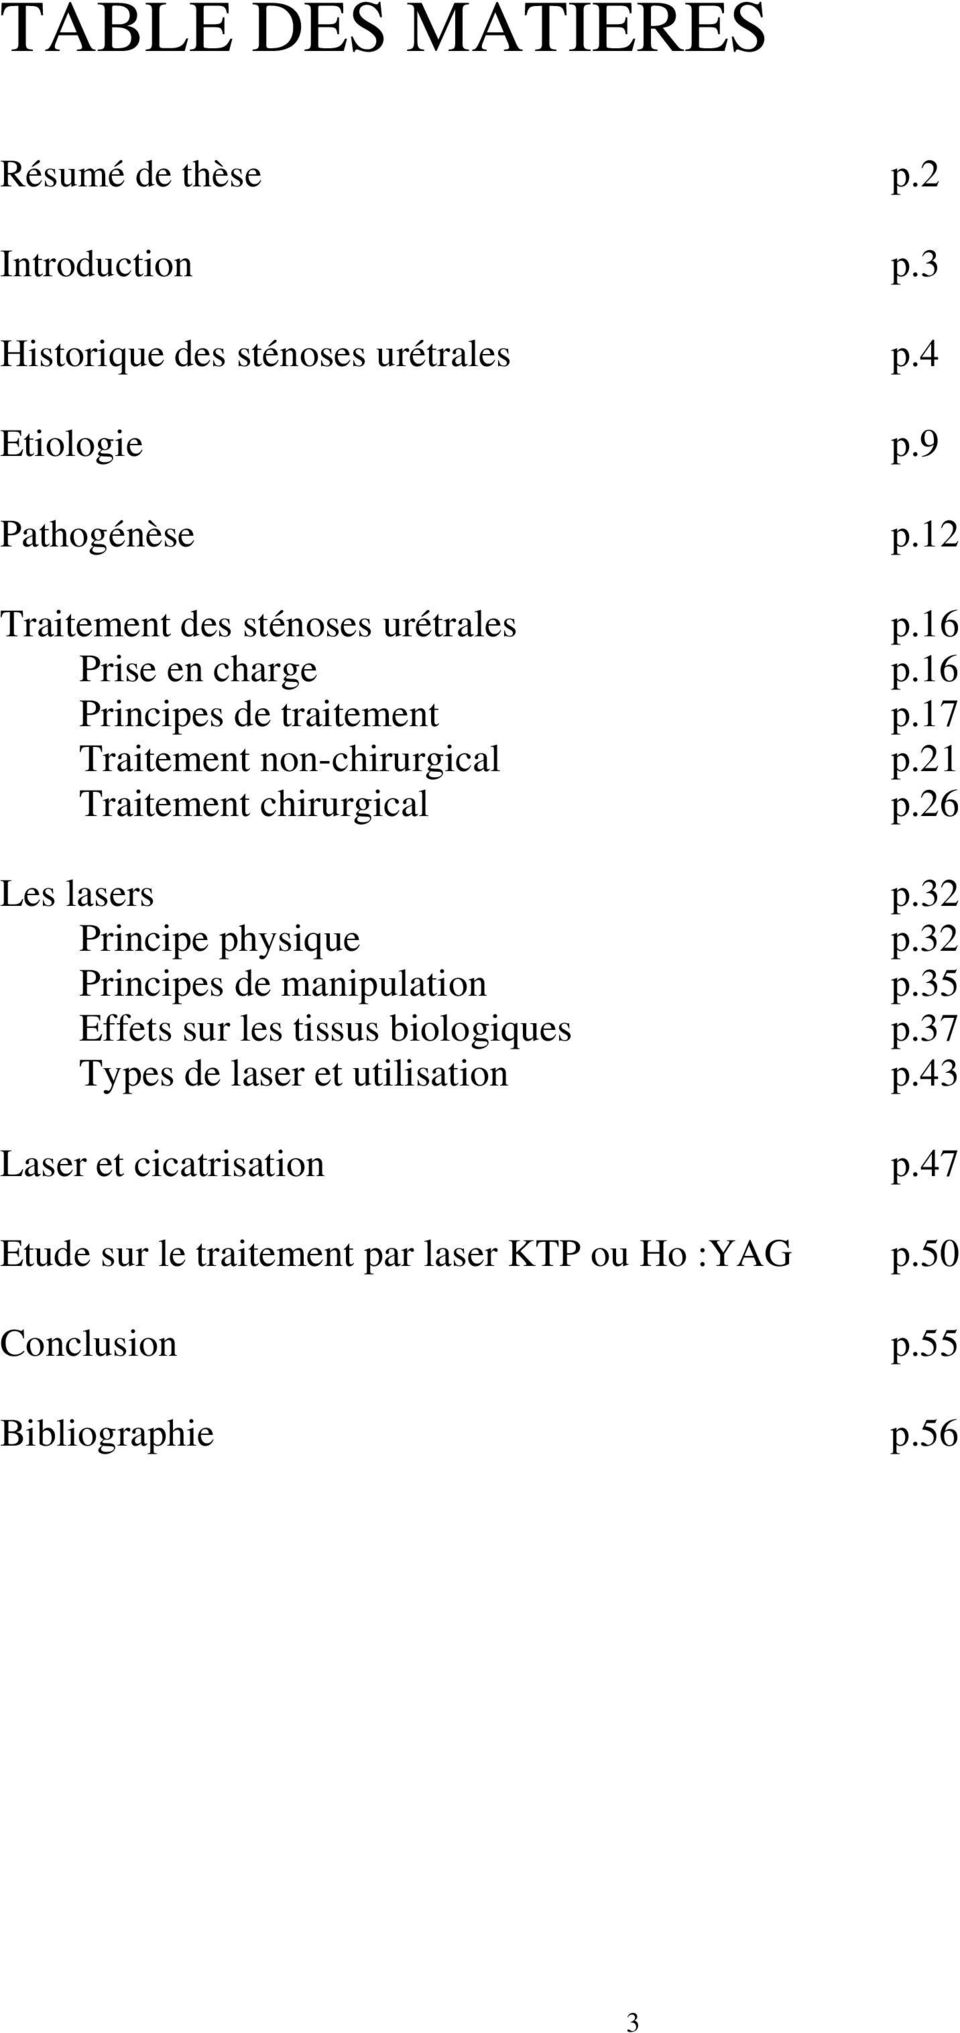 21 Traitement chirurgical p.26 Les lasers p.32 Principe physique p.32 Principes de manipulation p.